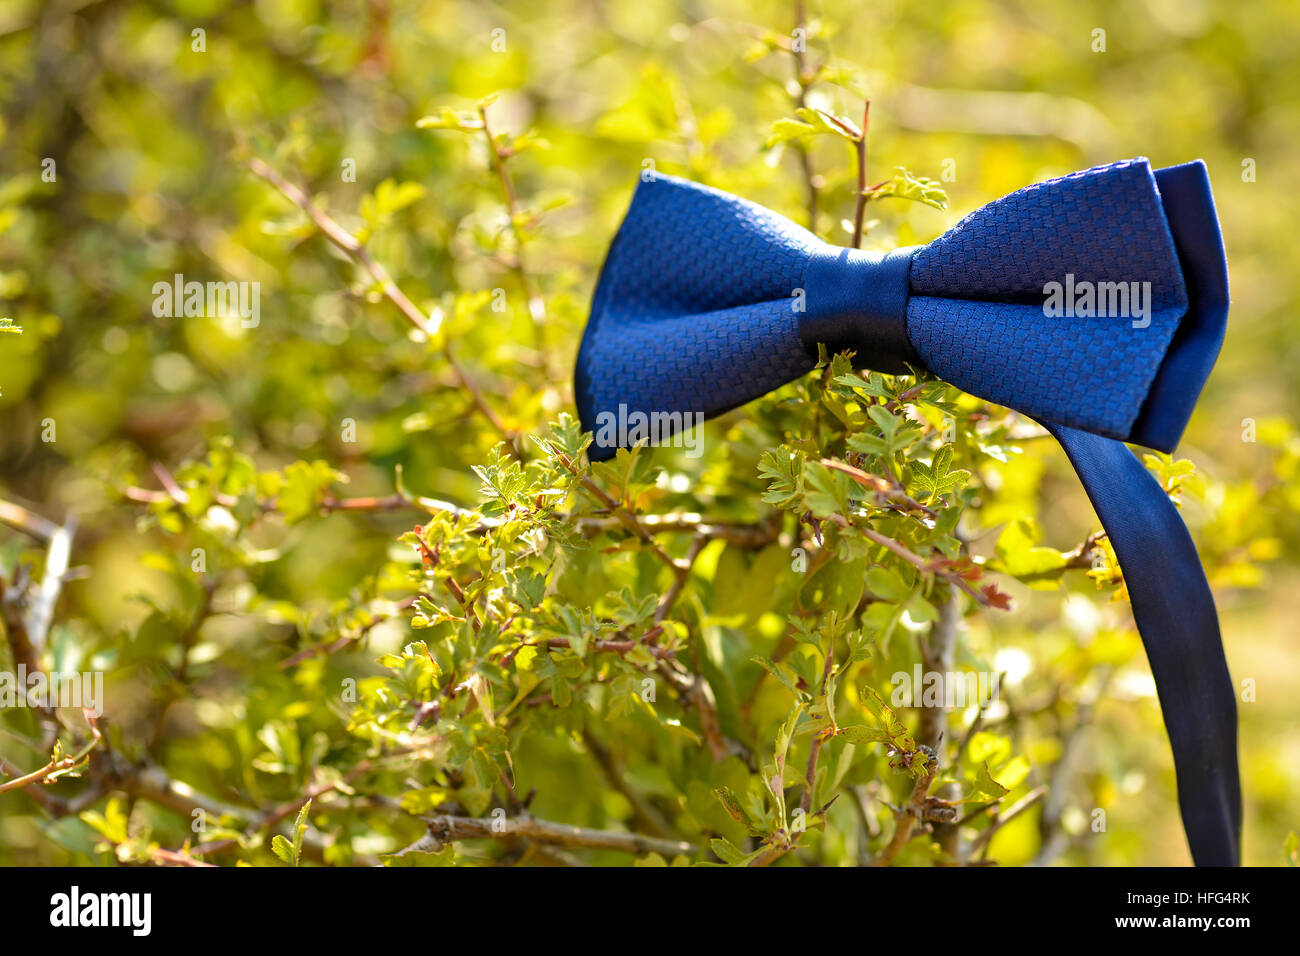 Noeud papillon accroché dans les buissons en plein jour Banque D'Images